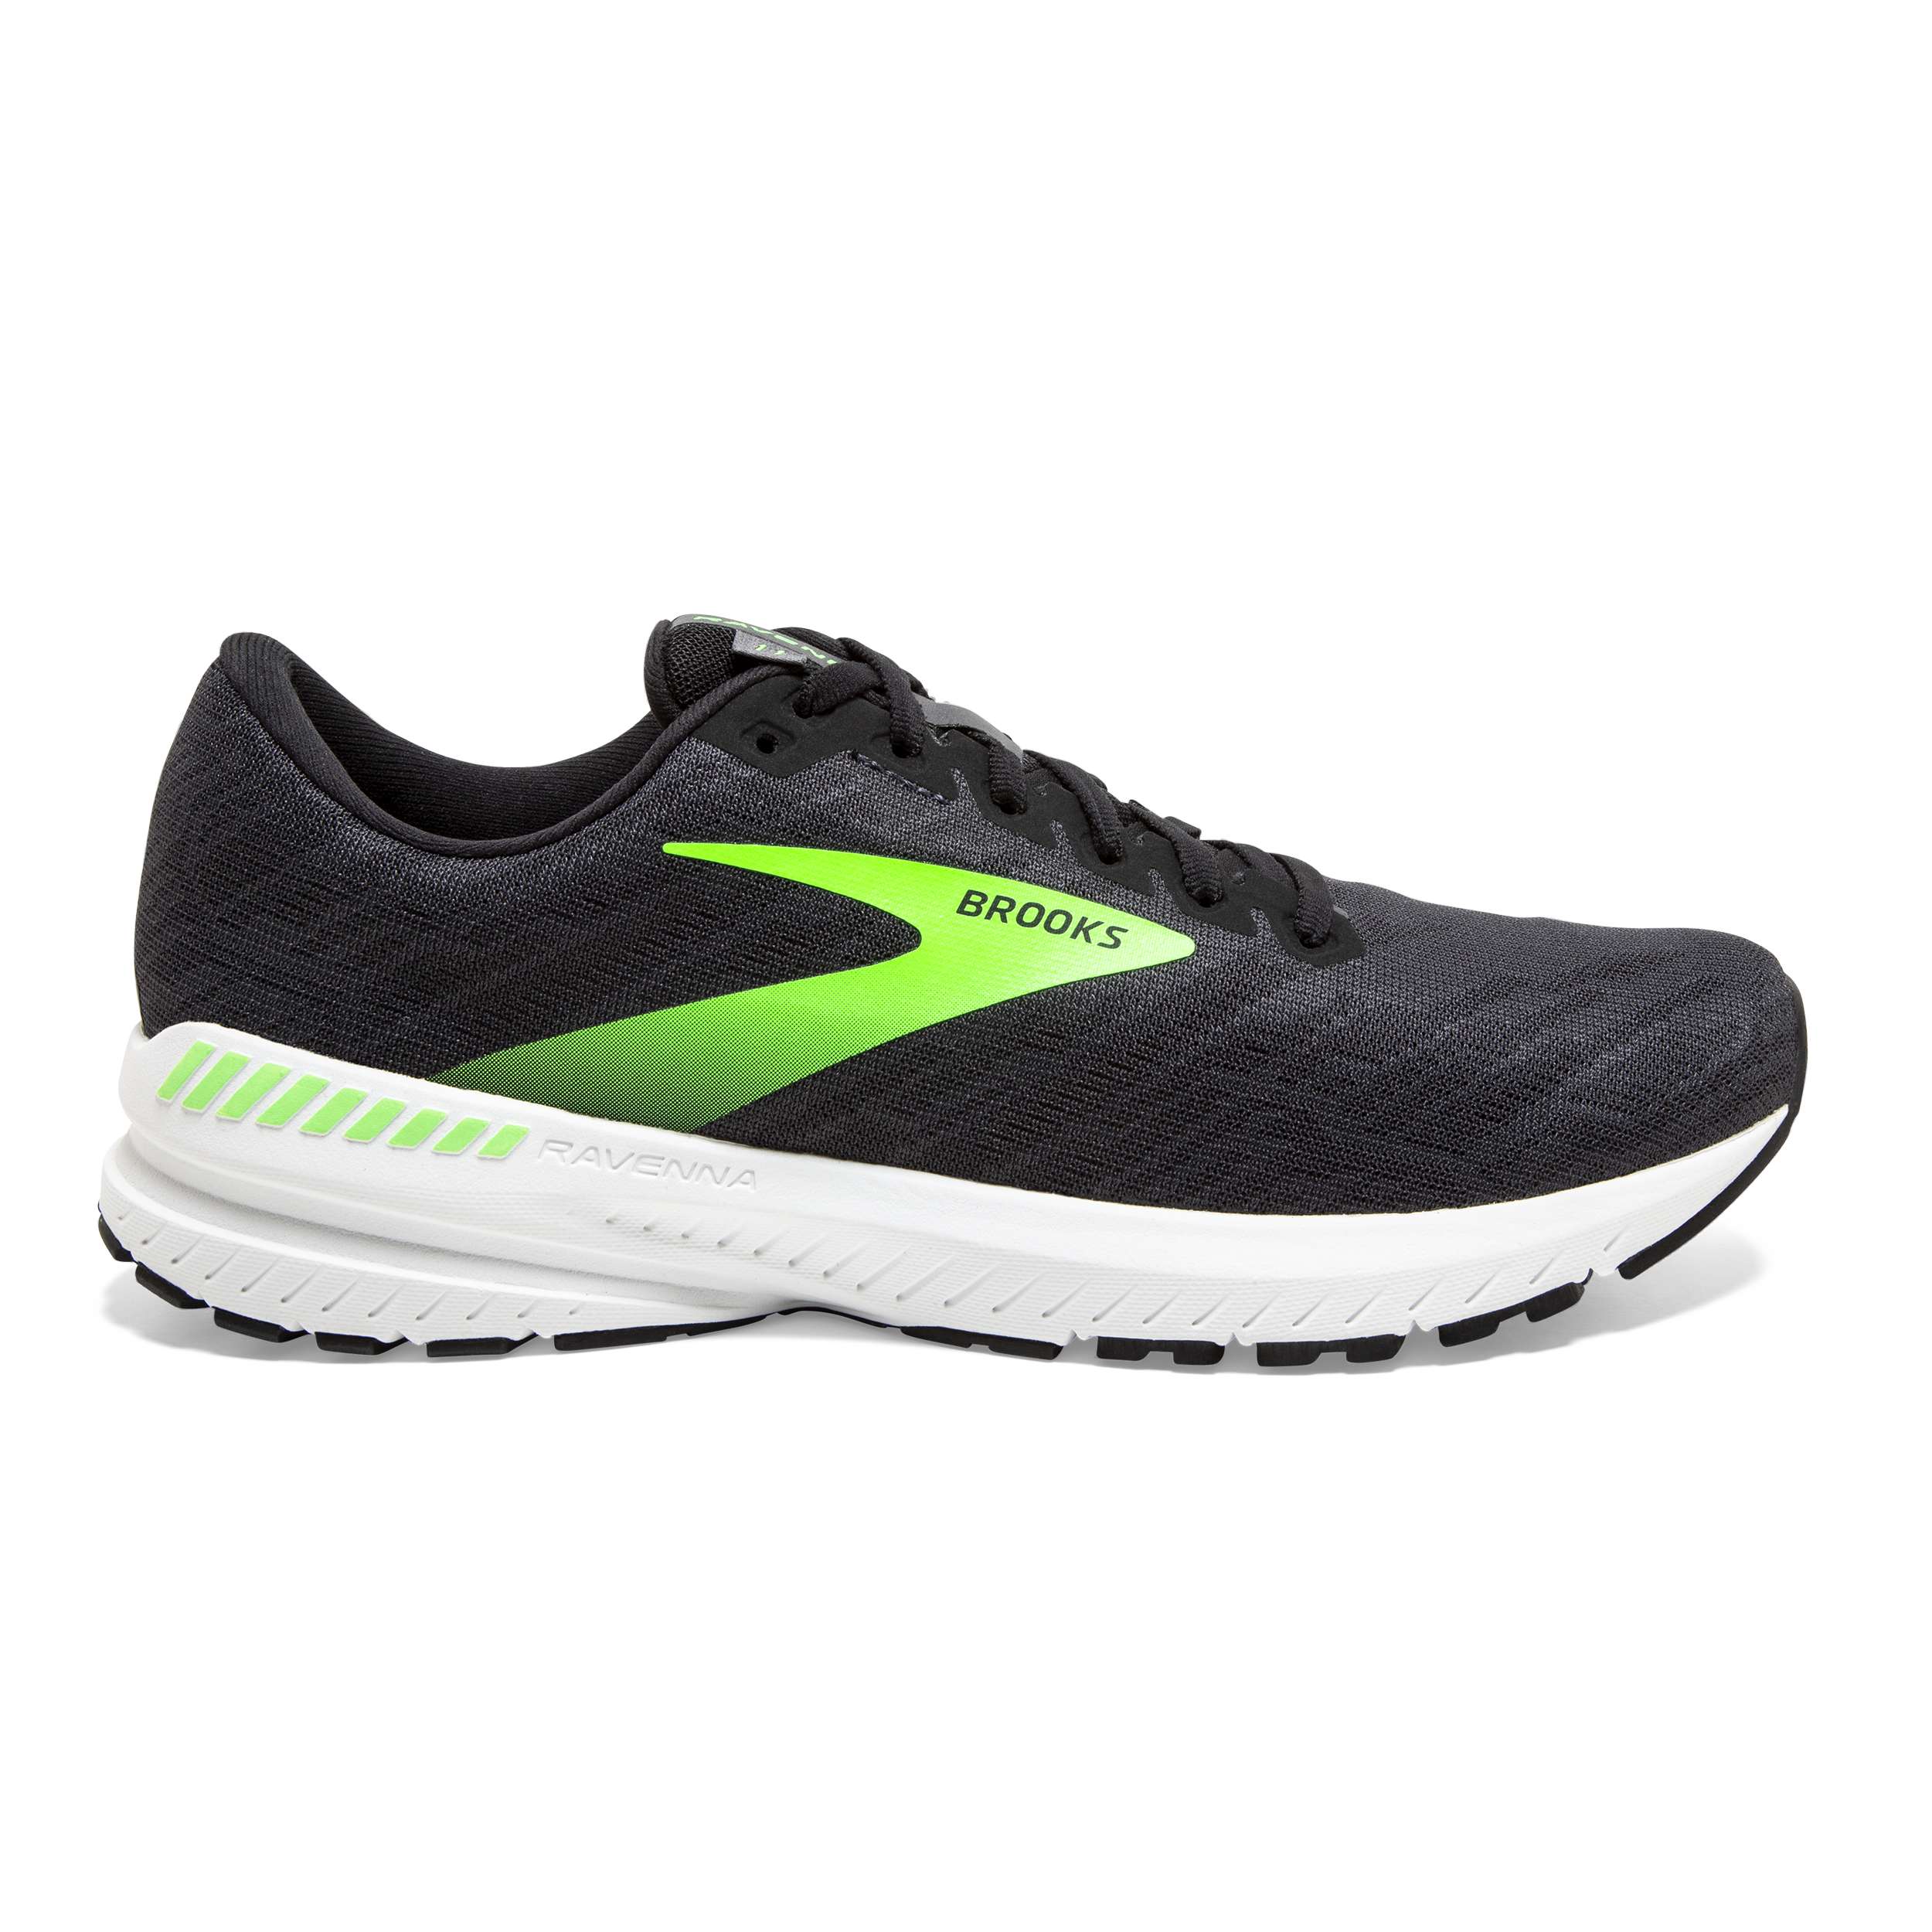 Brooks Ravenna 4 Running Shoes Grey / Green 1101311D876 Men's 10